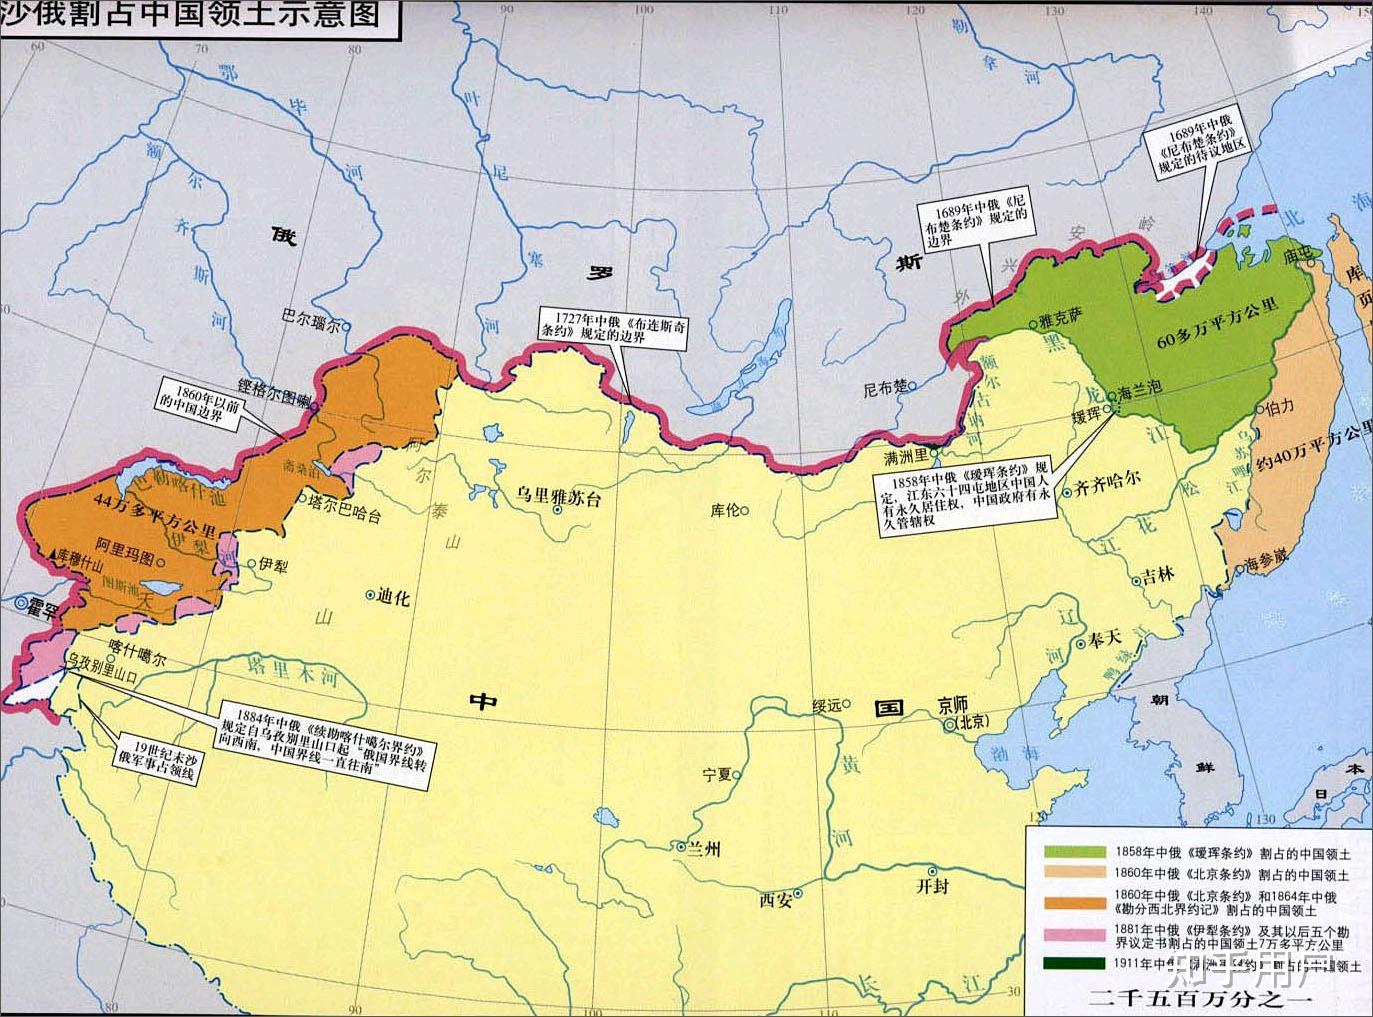 谁能讲一下外东北有没有黑土地,都具体分布哪里,另外黑龙江中下游有